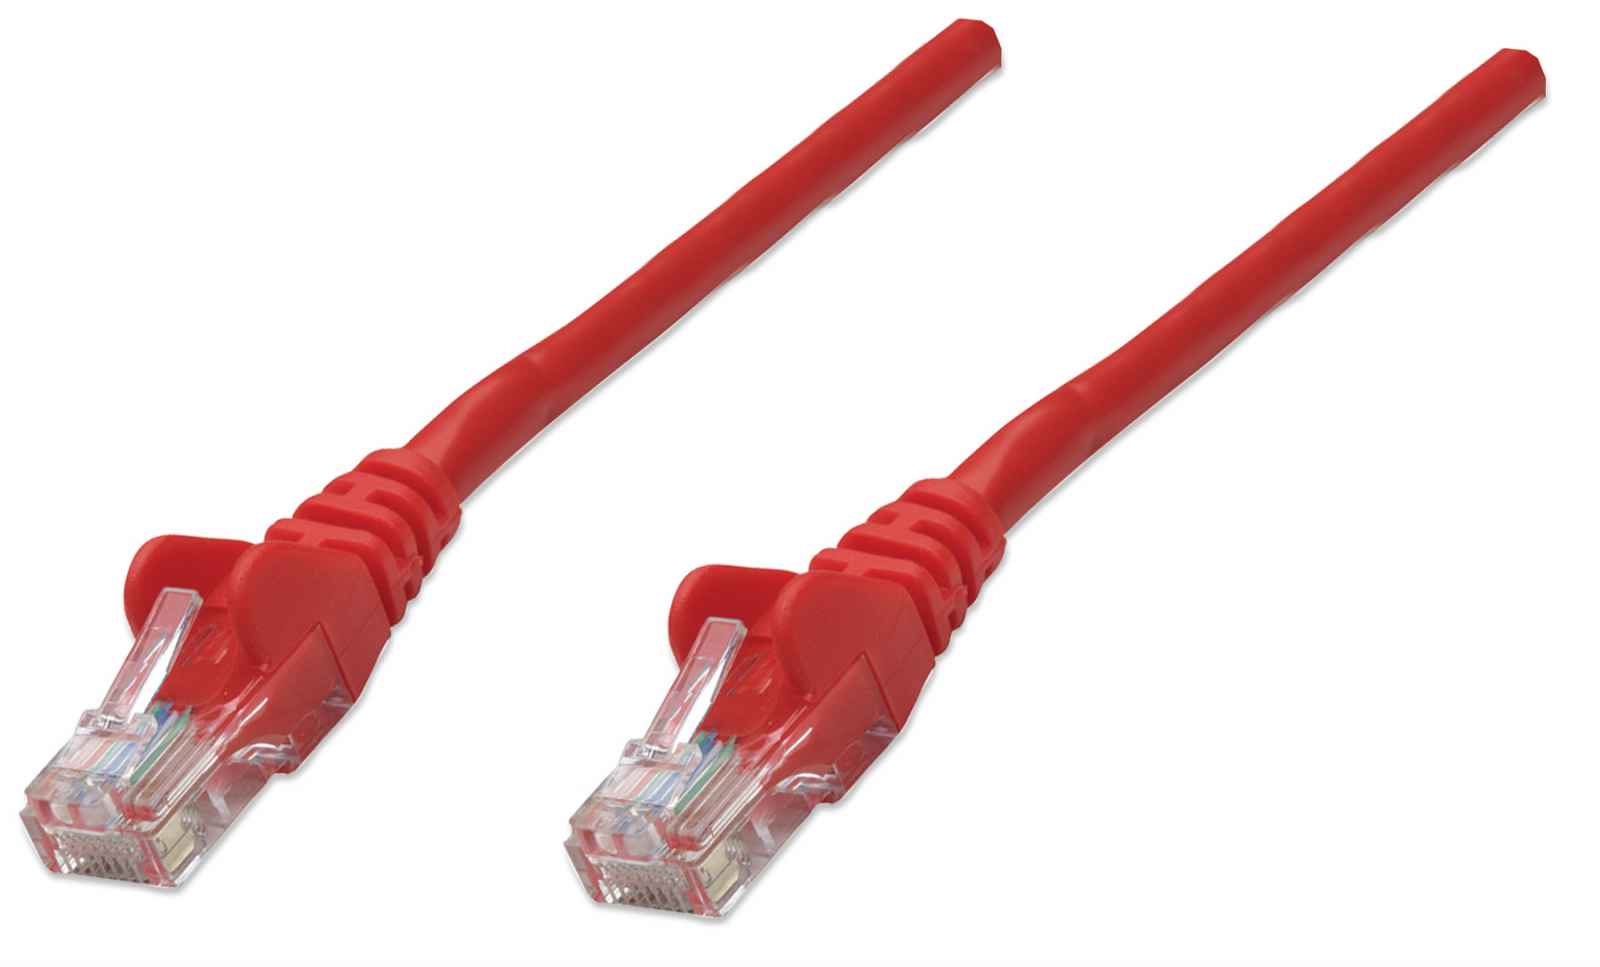 Cable de red, Cat6, UTP / RJ45 Macho, 2m, Rojo, 342612